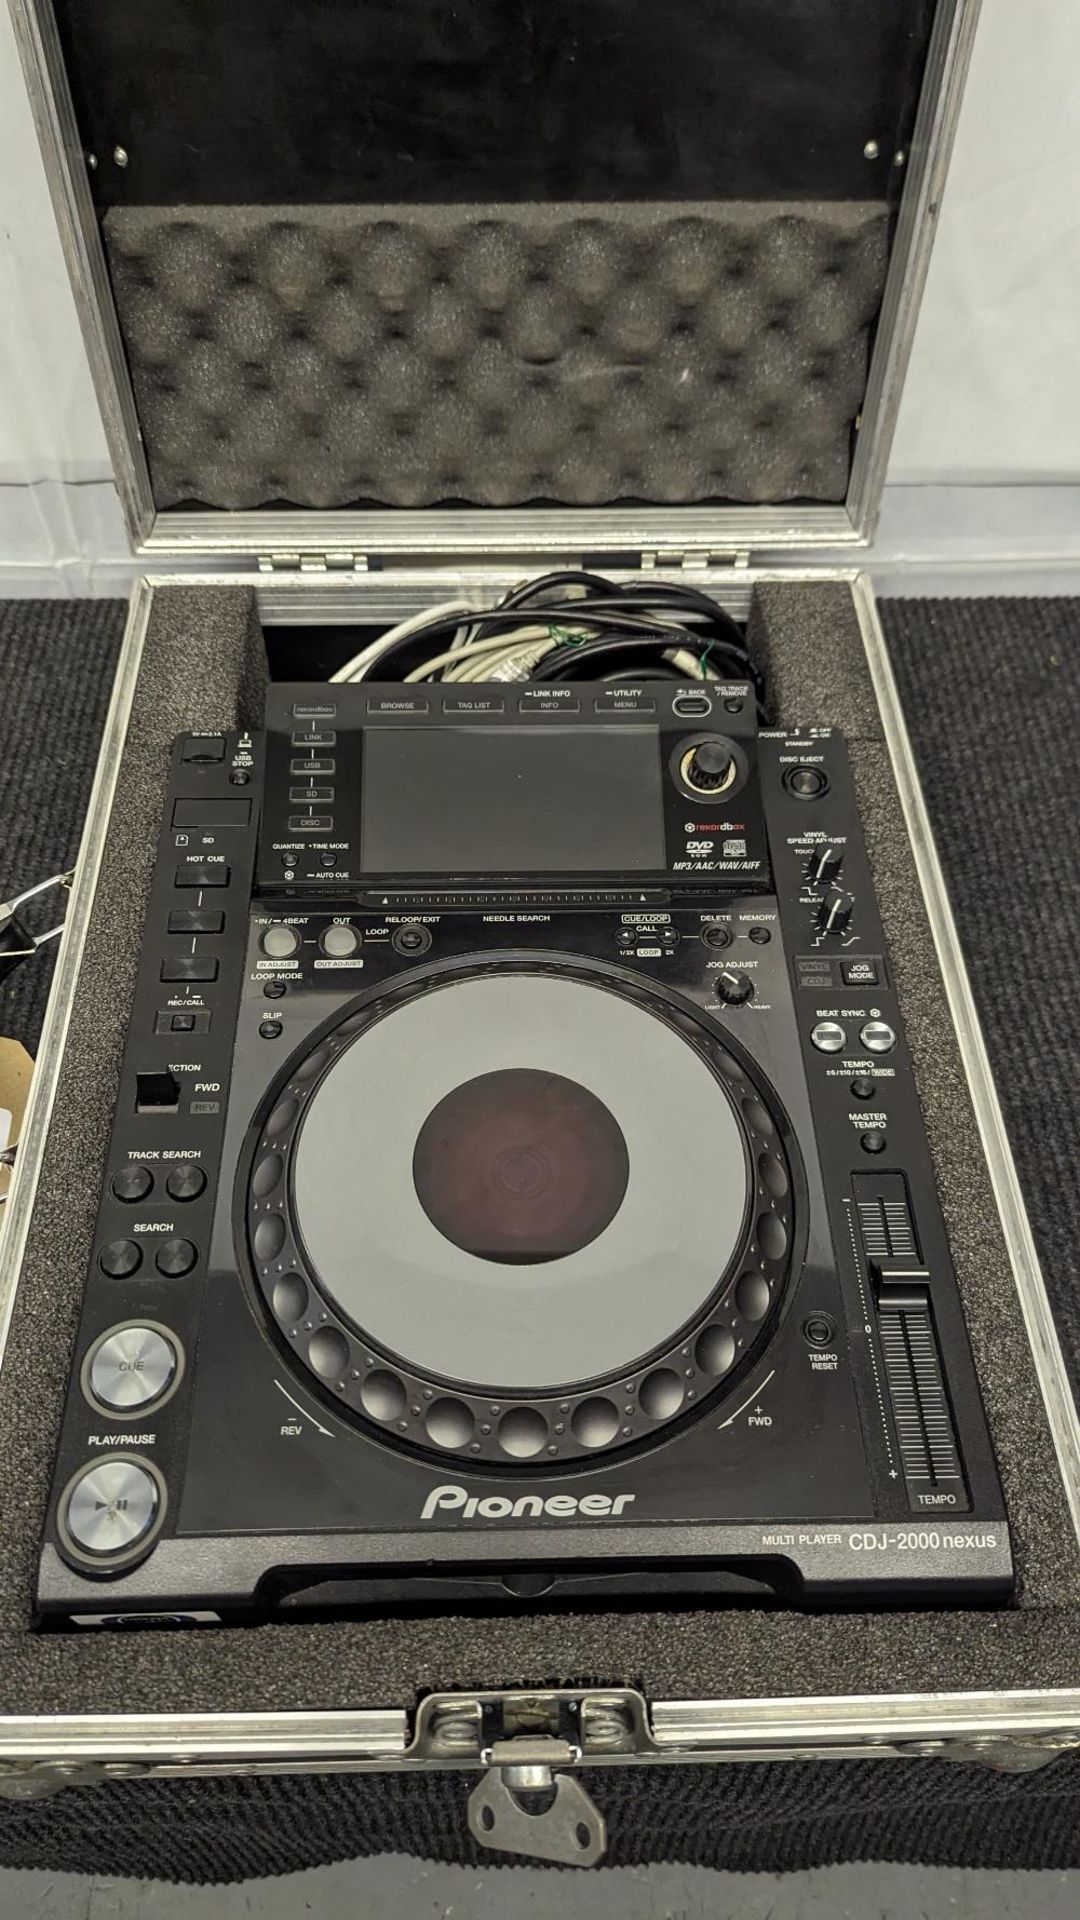 Pioneer CDJ2000 Nexus Digital DJ Deck - Image 2 of 5